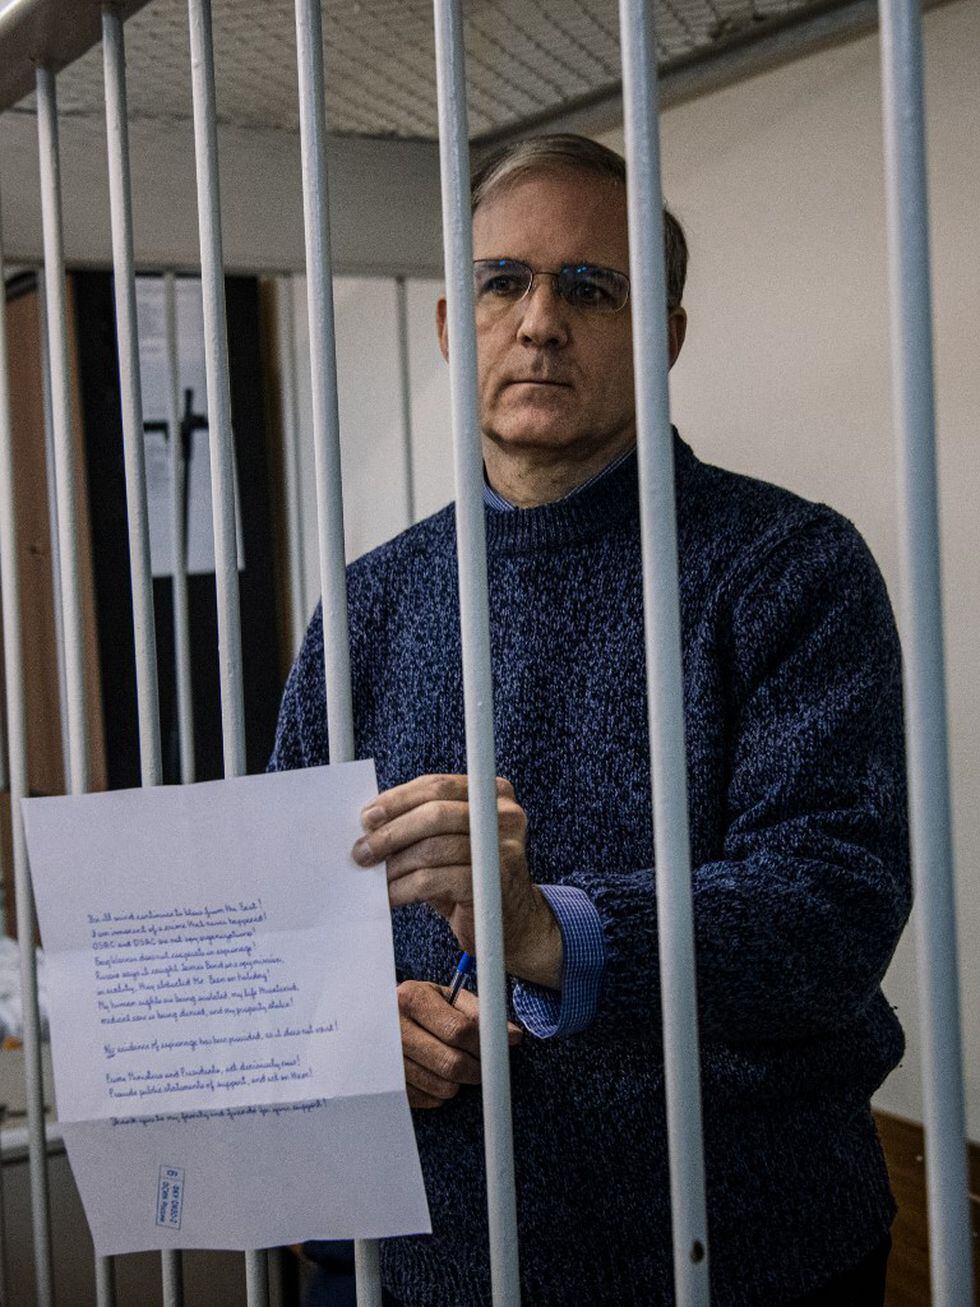 Imagen de archivo del estadounidense-británico Paul Whelan, ex infante de marina estadounidense acusado de espionaje y arrestado en Rusia en diciembre de 2018. (Dimitar DILKOFF / AFP)